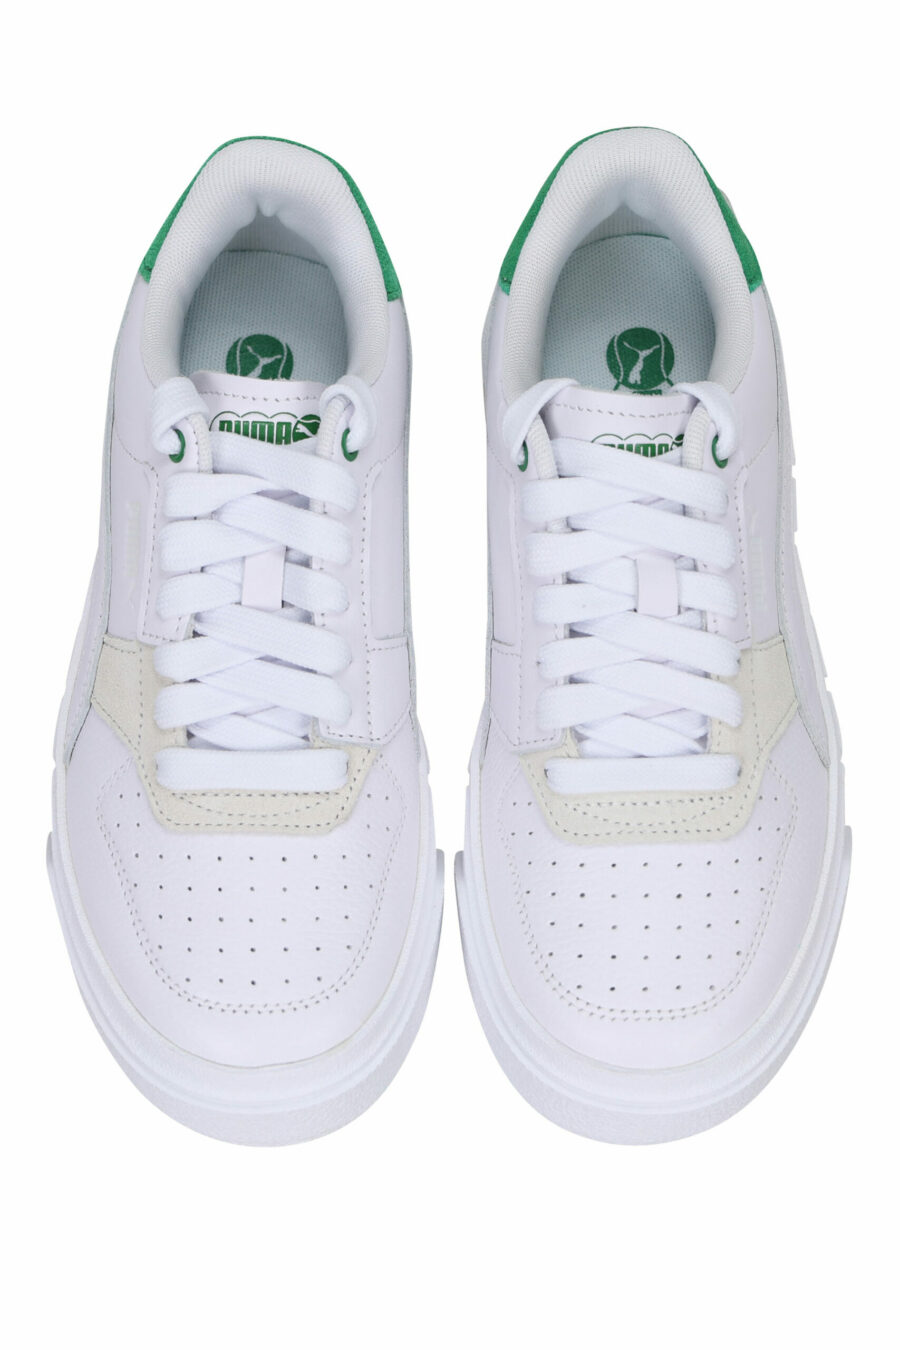 Sapatilhas brancas com verde "cali court" - 4065454941770 4 scaled